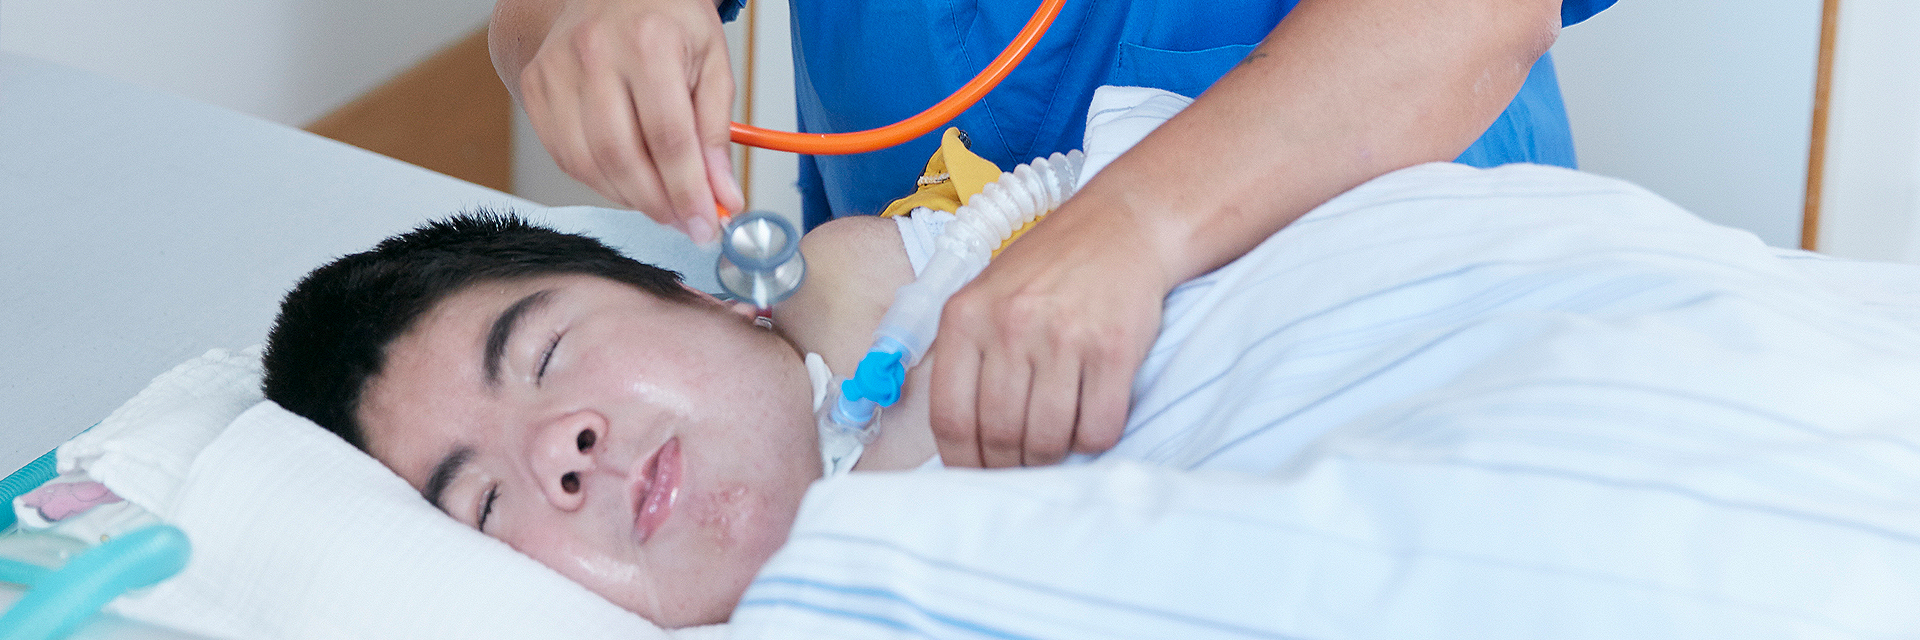 Bild: Die Atmungstherapeutin der Kinderklinik Schömberg überprüft die invasive Beatmung eines Patienten